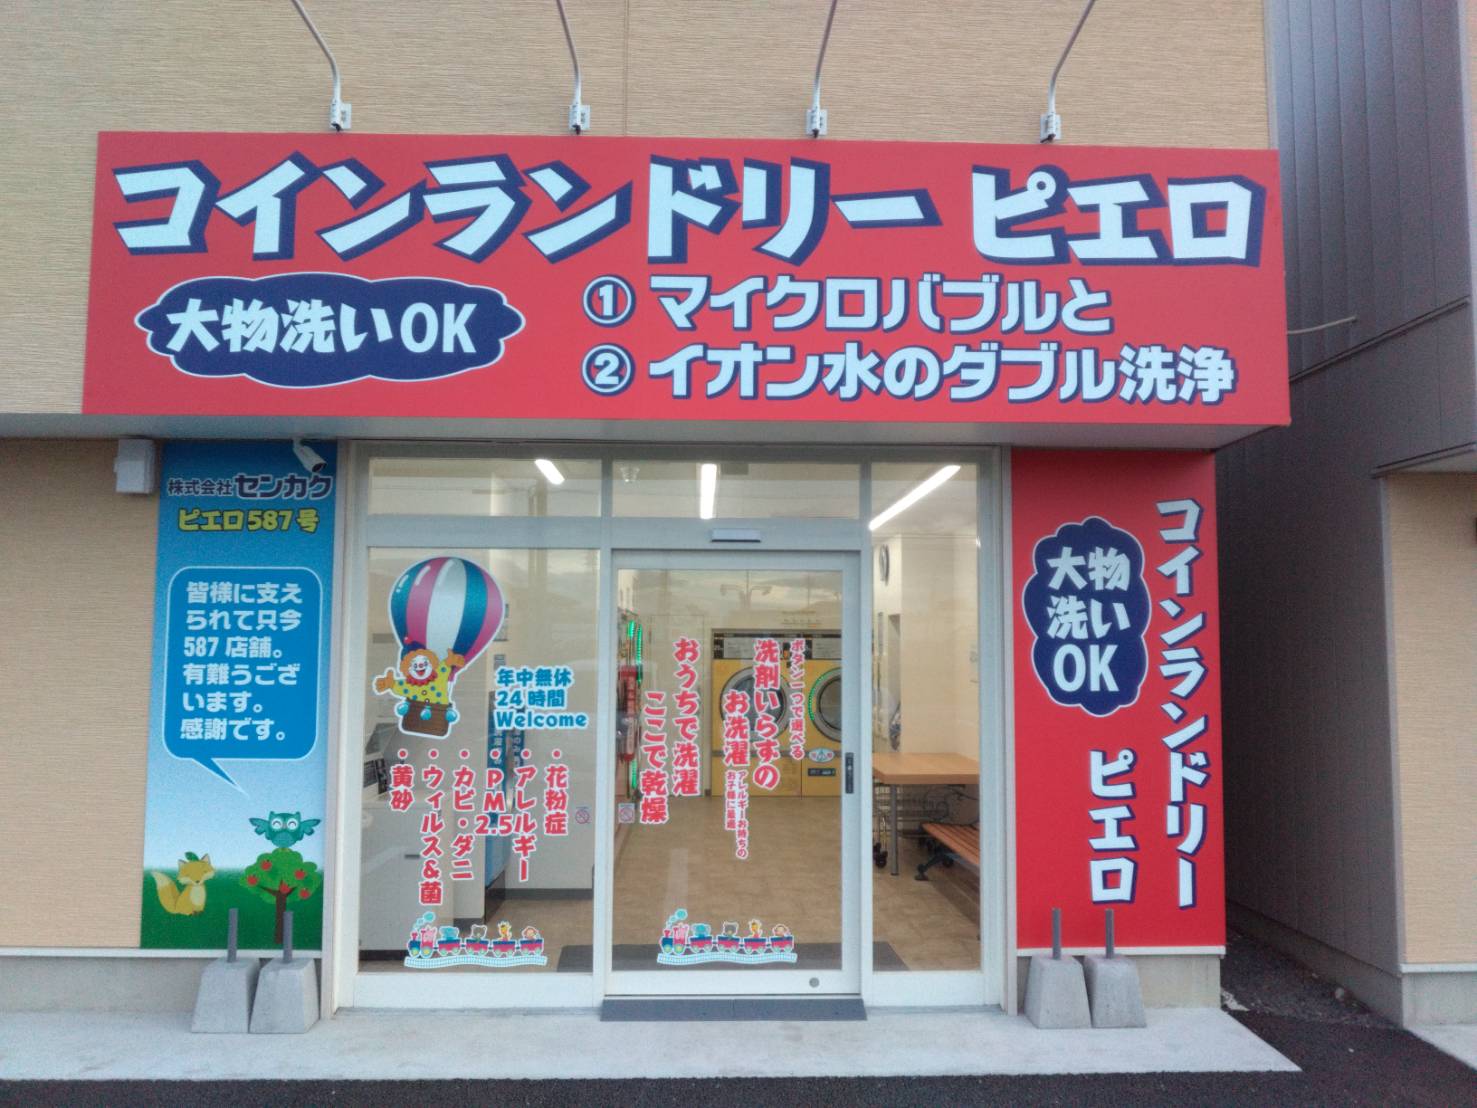 コインランドリー/ピエロ 587号 田部井町店の写真